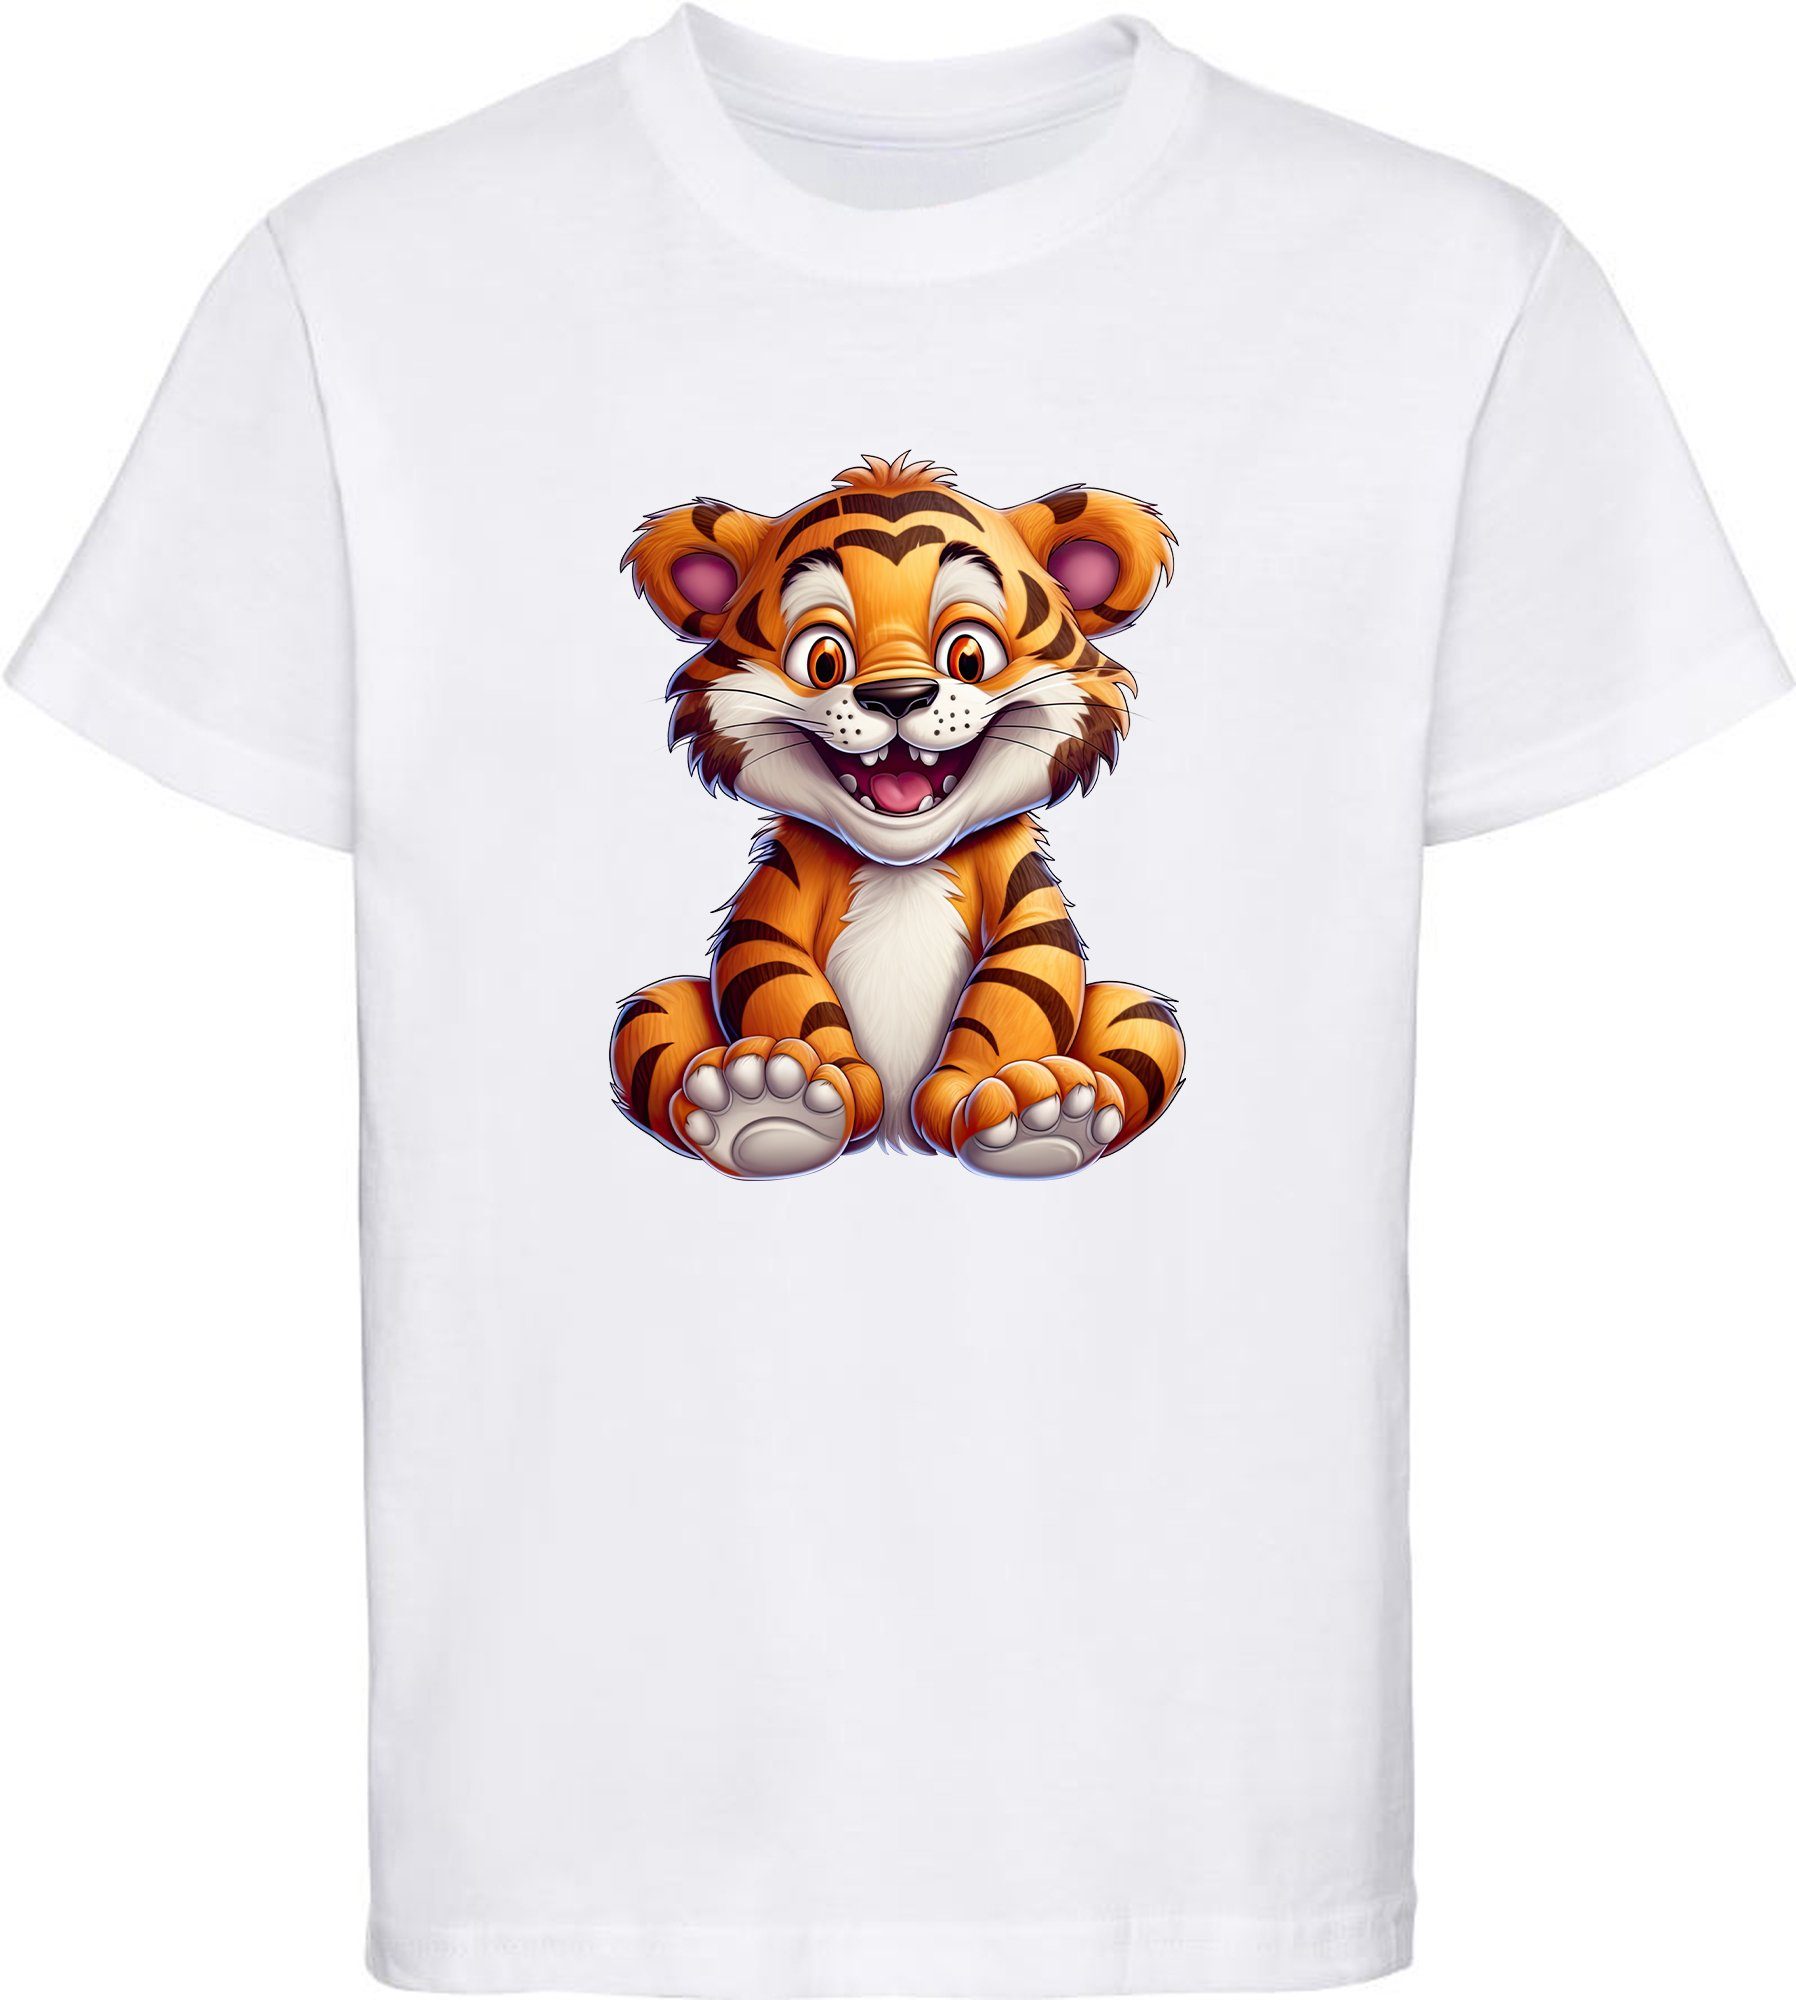 MyDesign24 T-Shirt Kinder Aufdruck, Baumwollshirt Wildtier Baby Tiger i278 bedruckt Print - weiss mit Shirt